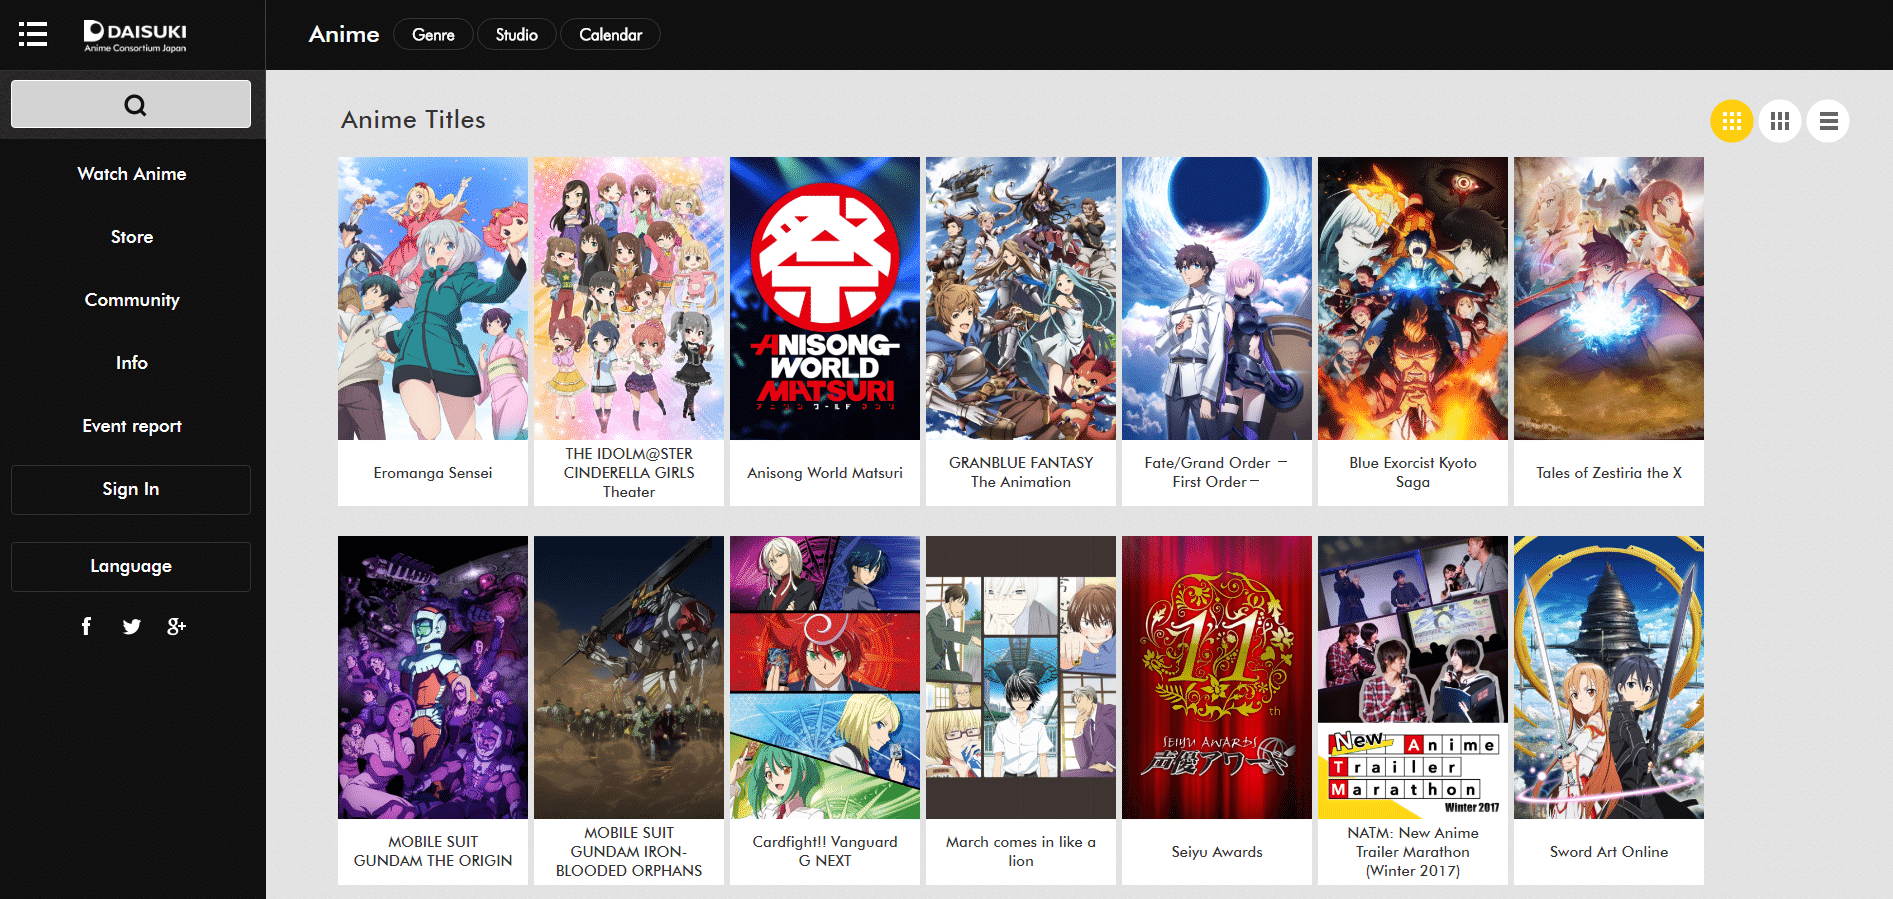 Site de streaming de animes Daisuki está encerrando suas operações